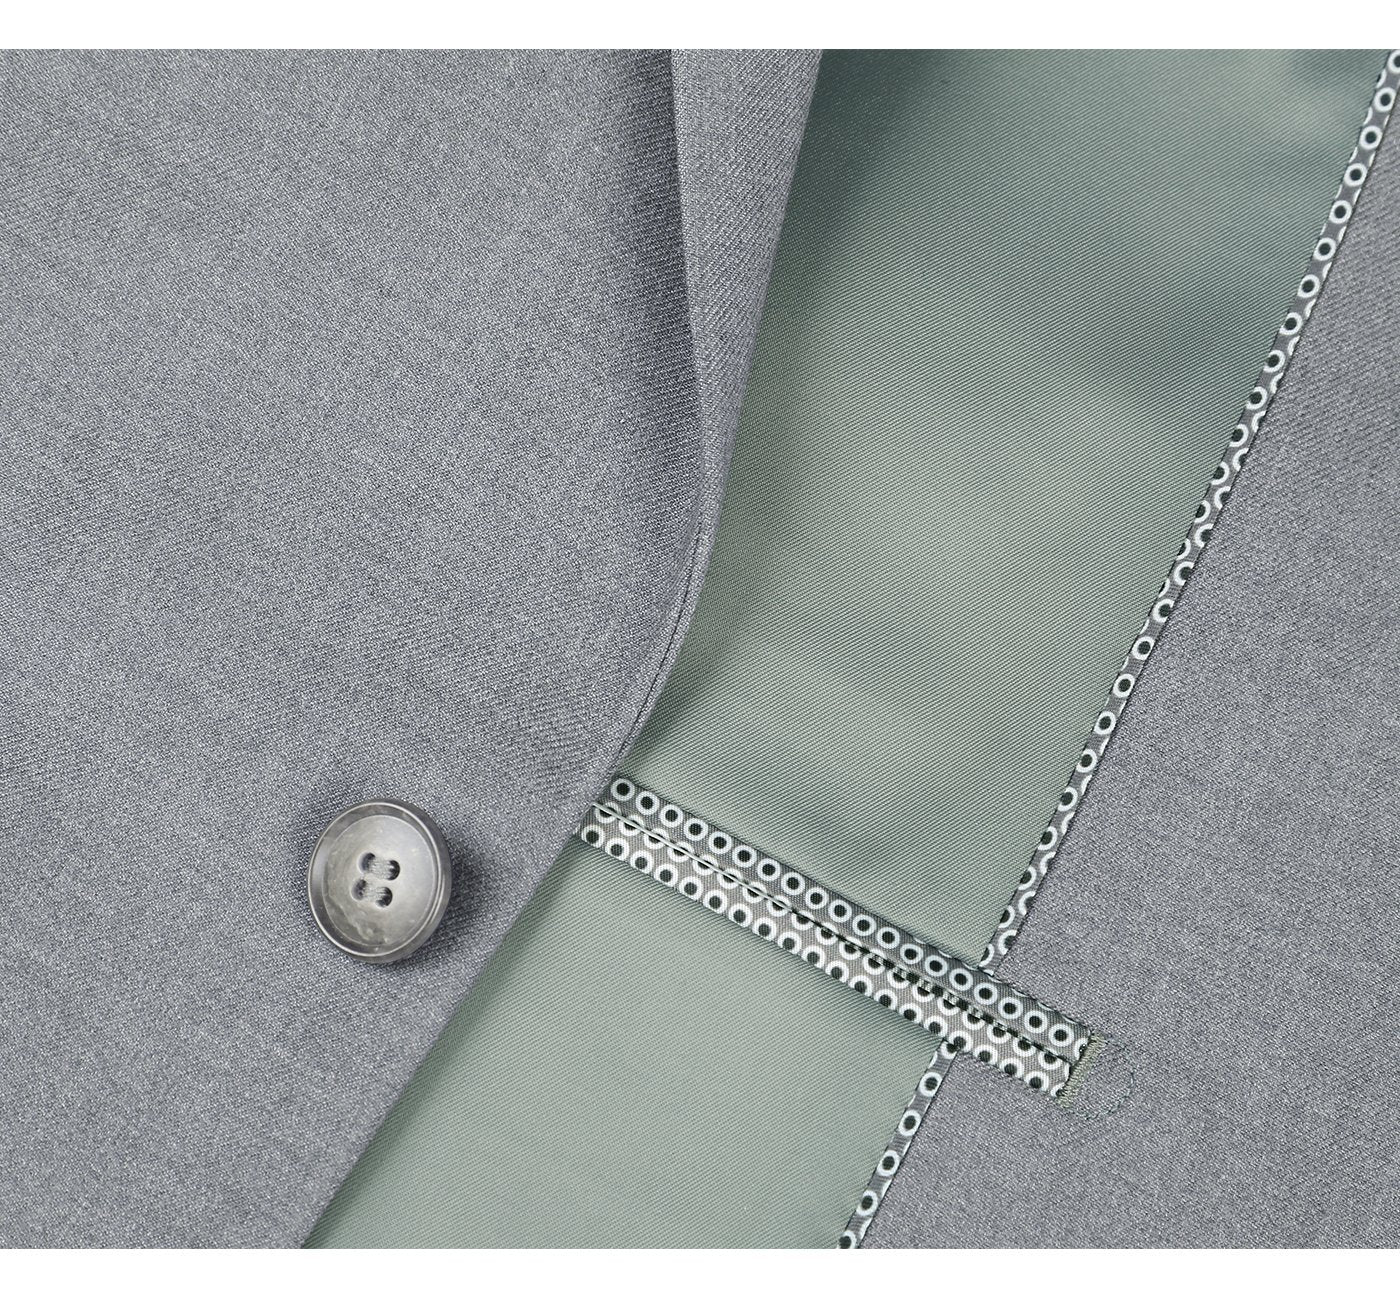 2110-2 Men's Slim Fit Light Grey Solid Stretch 2-Piece Suit